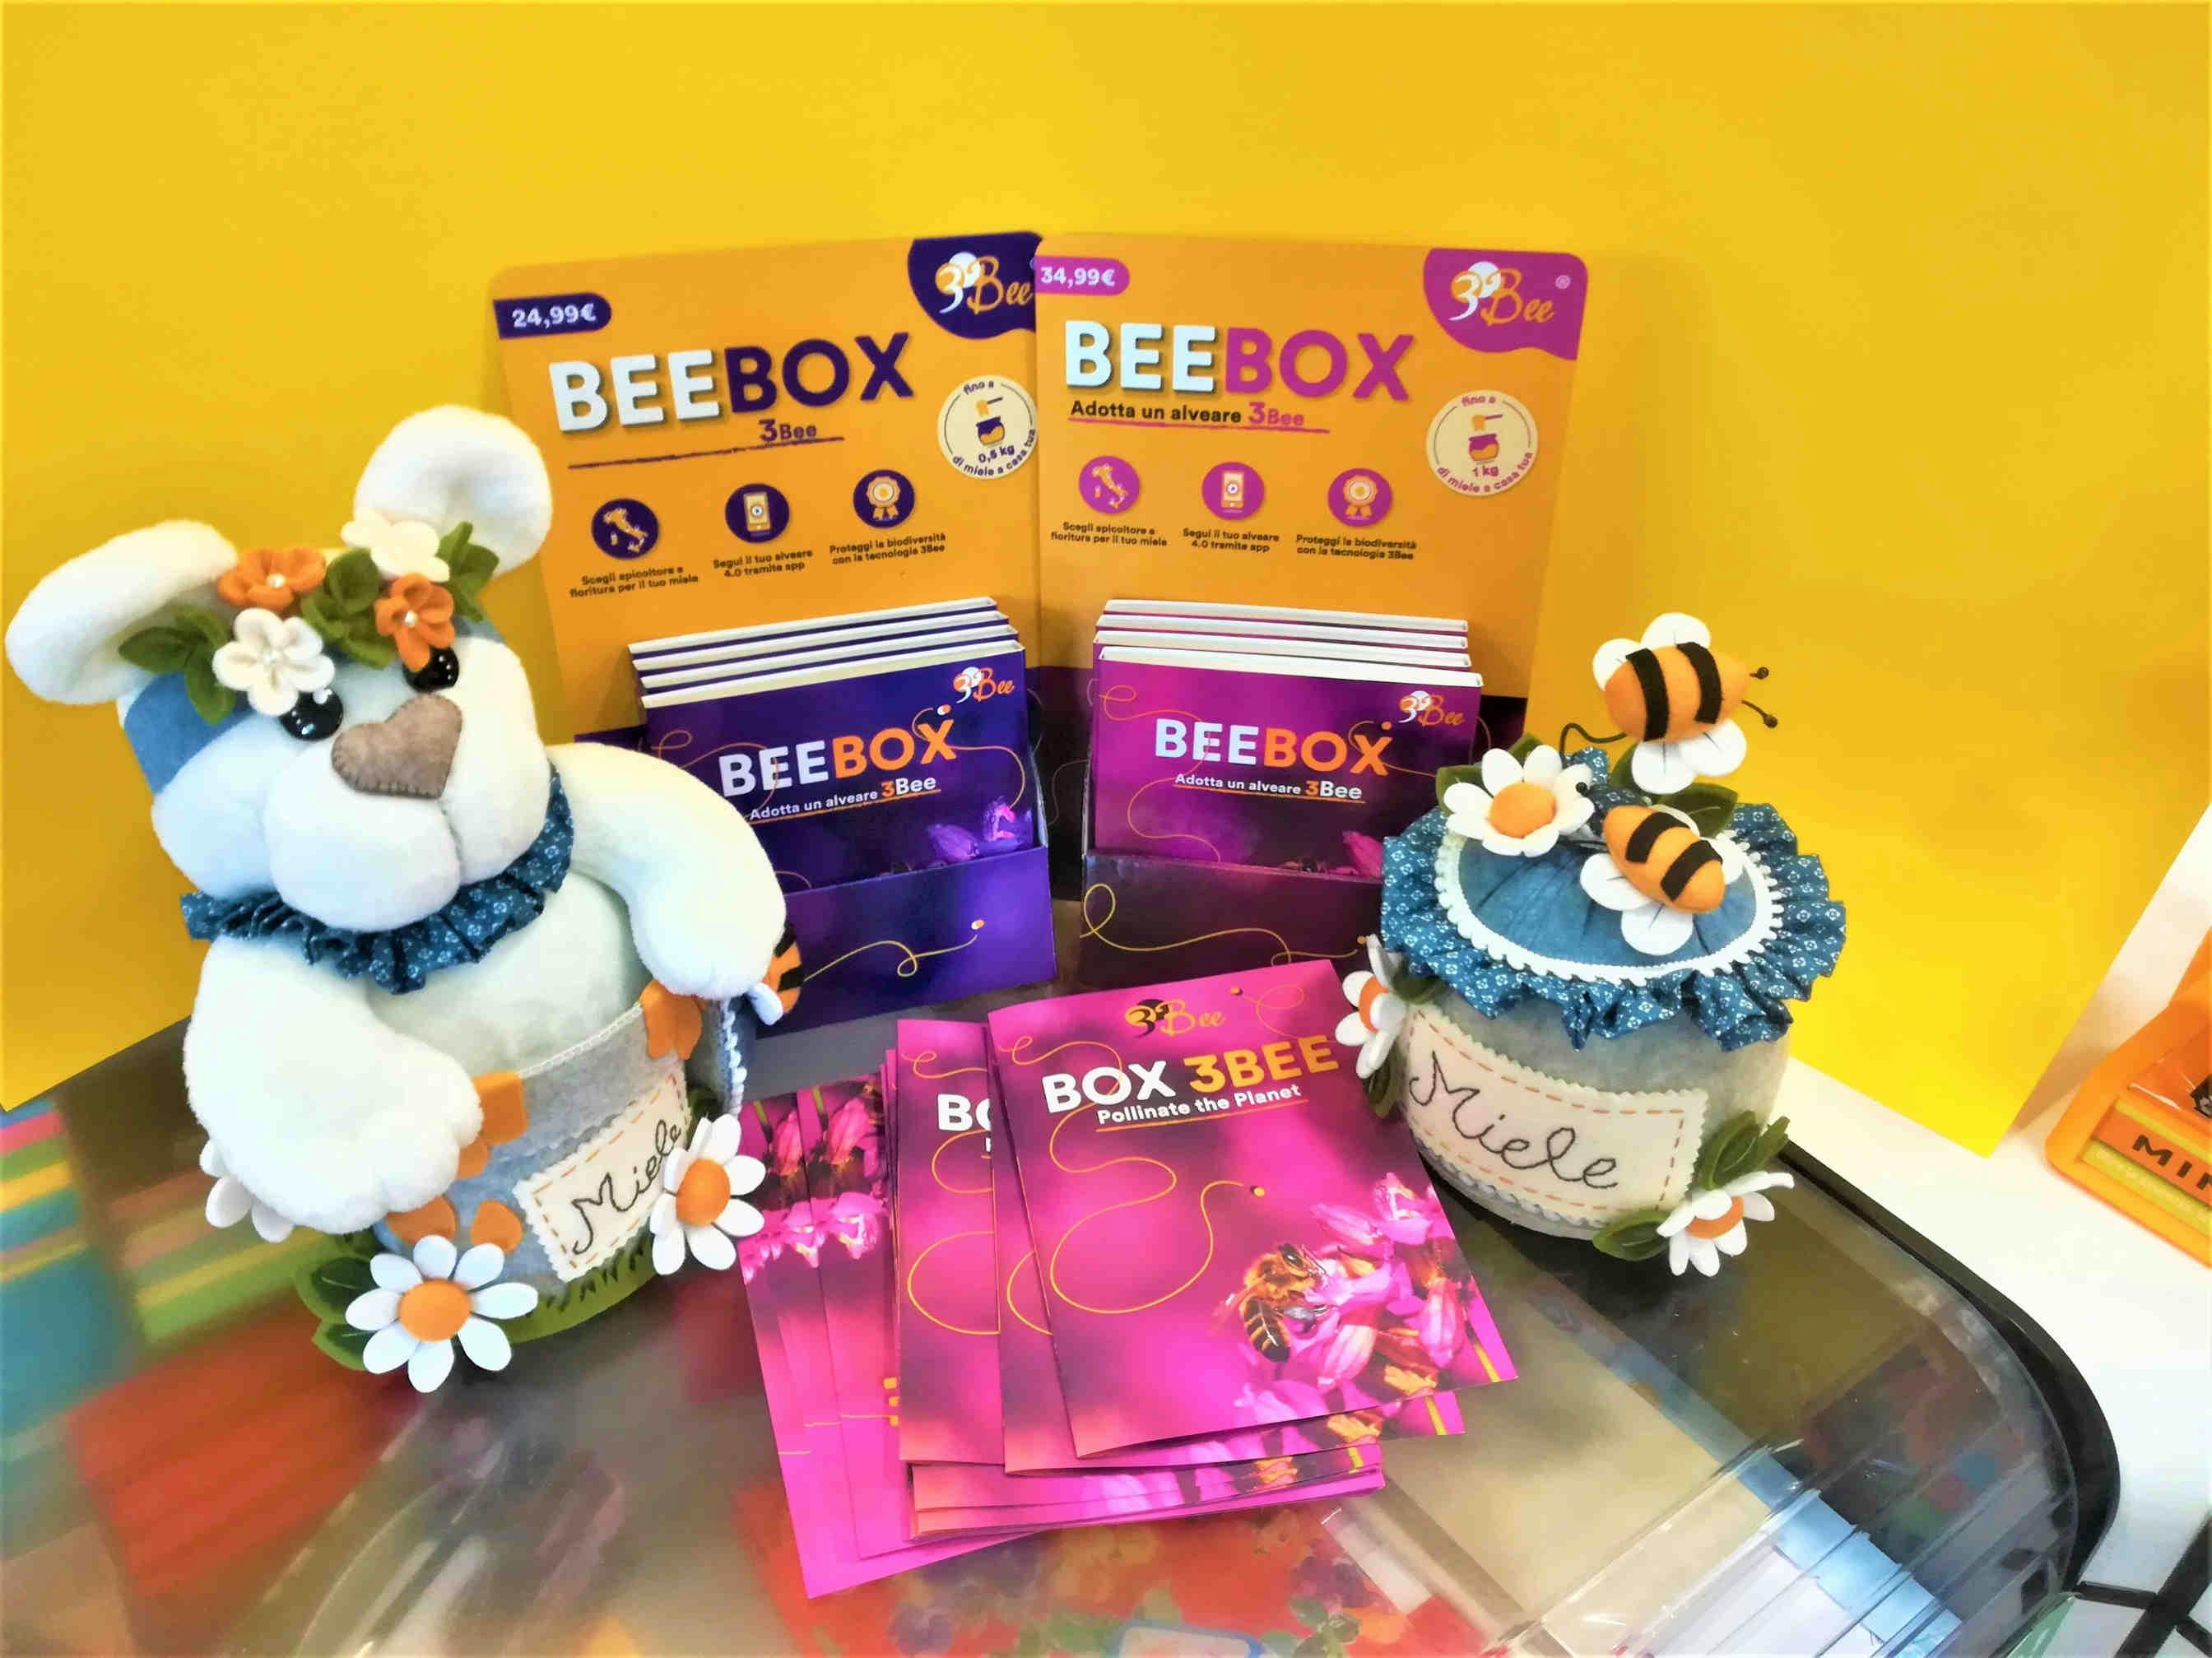 3Bee porta le sue api tech negli store | Box 3Bee